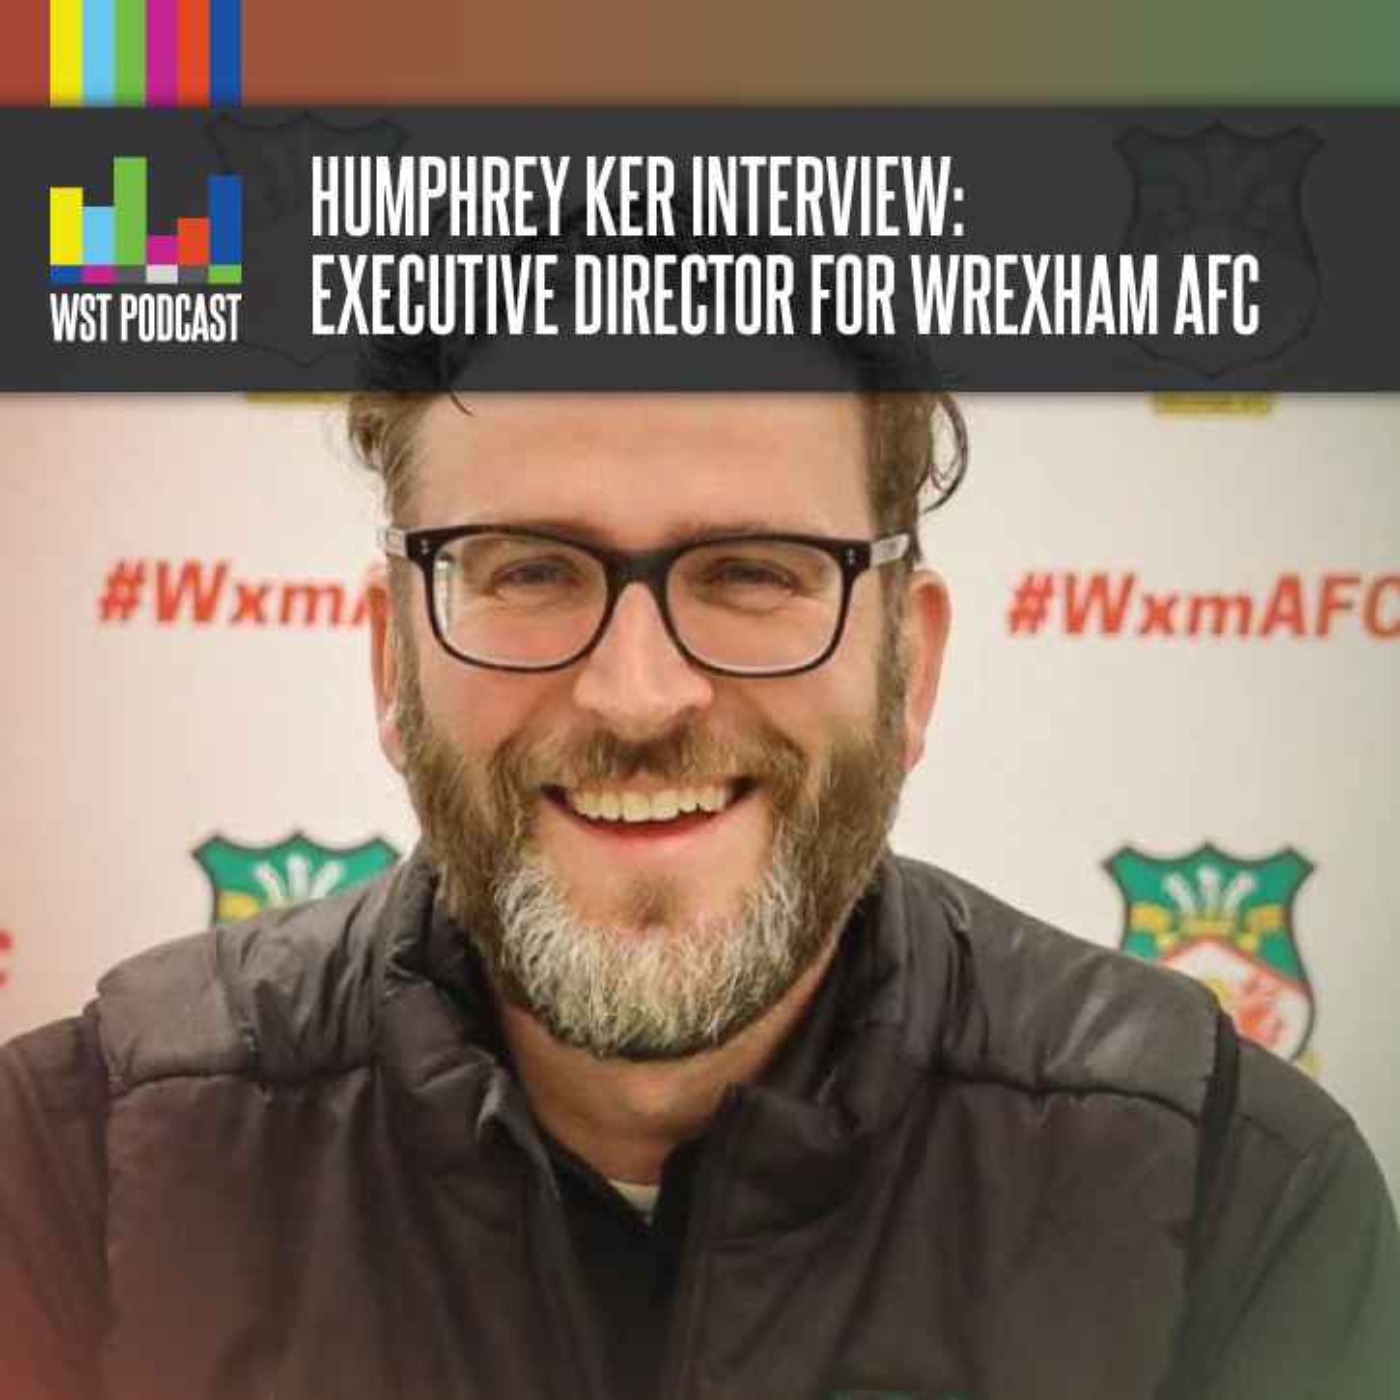 Humphrey Ker Interview: Executive Director at Wrexham AFC